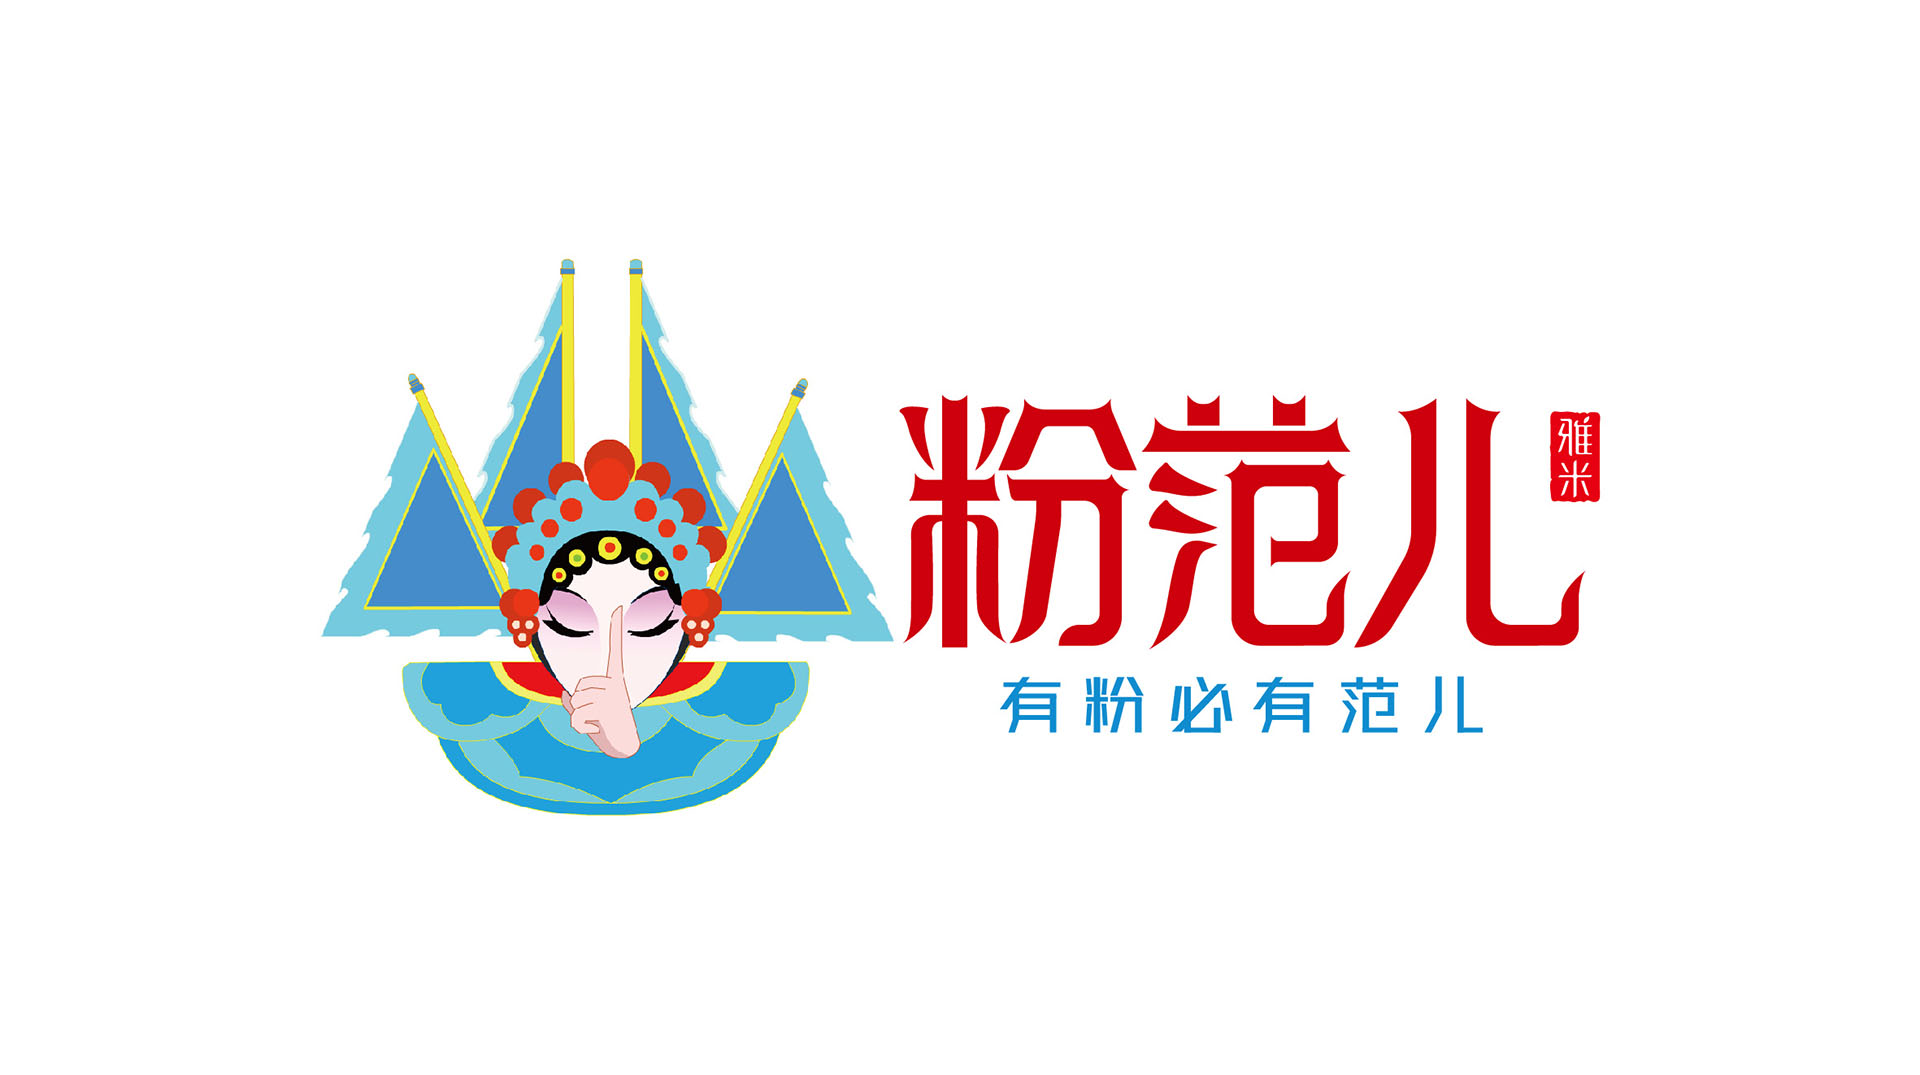 粉范儿雅米品牌logo提案_06